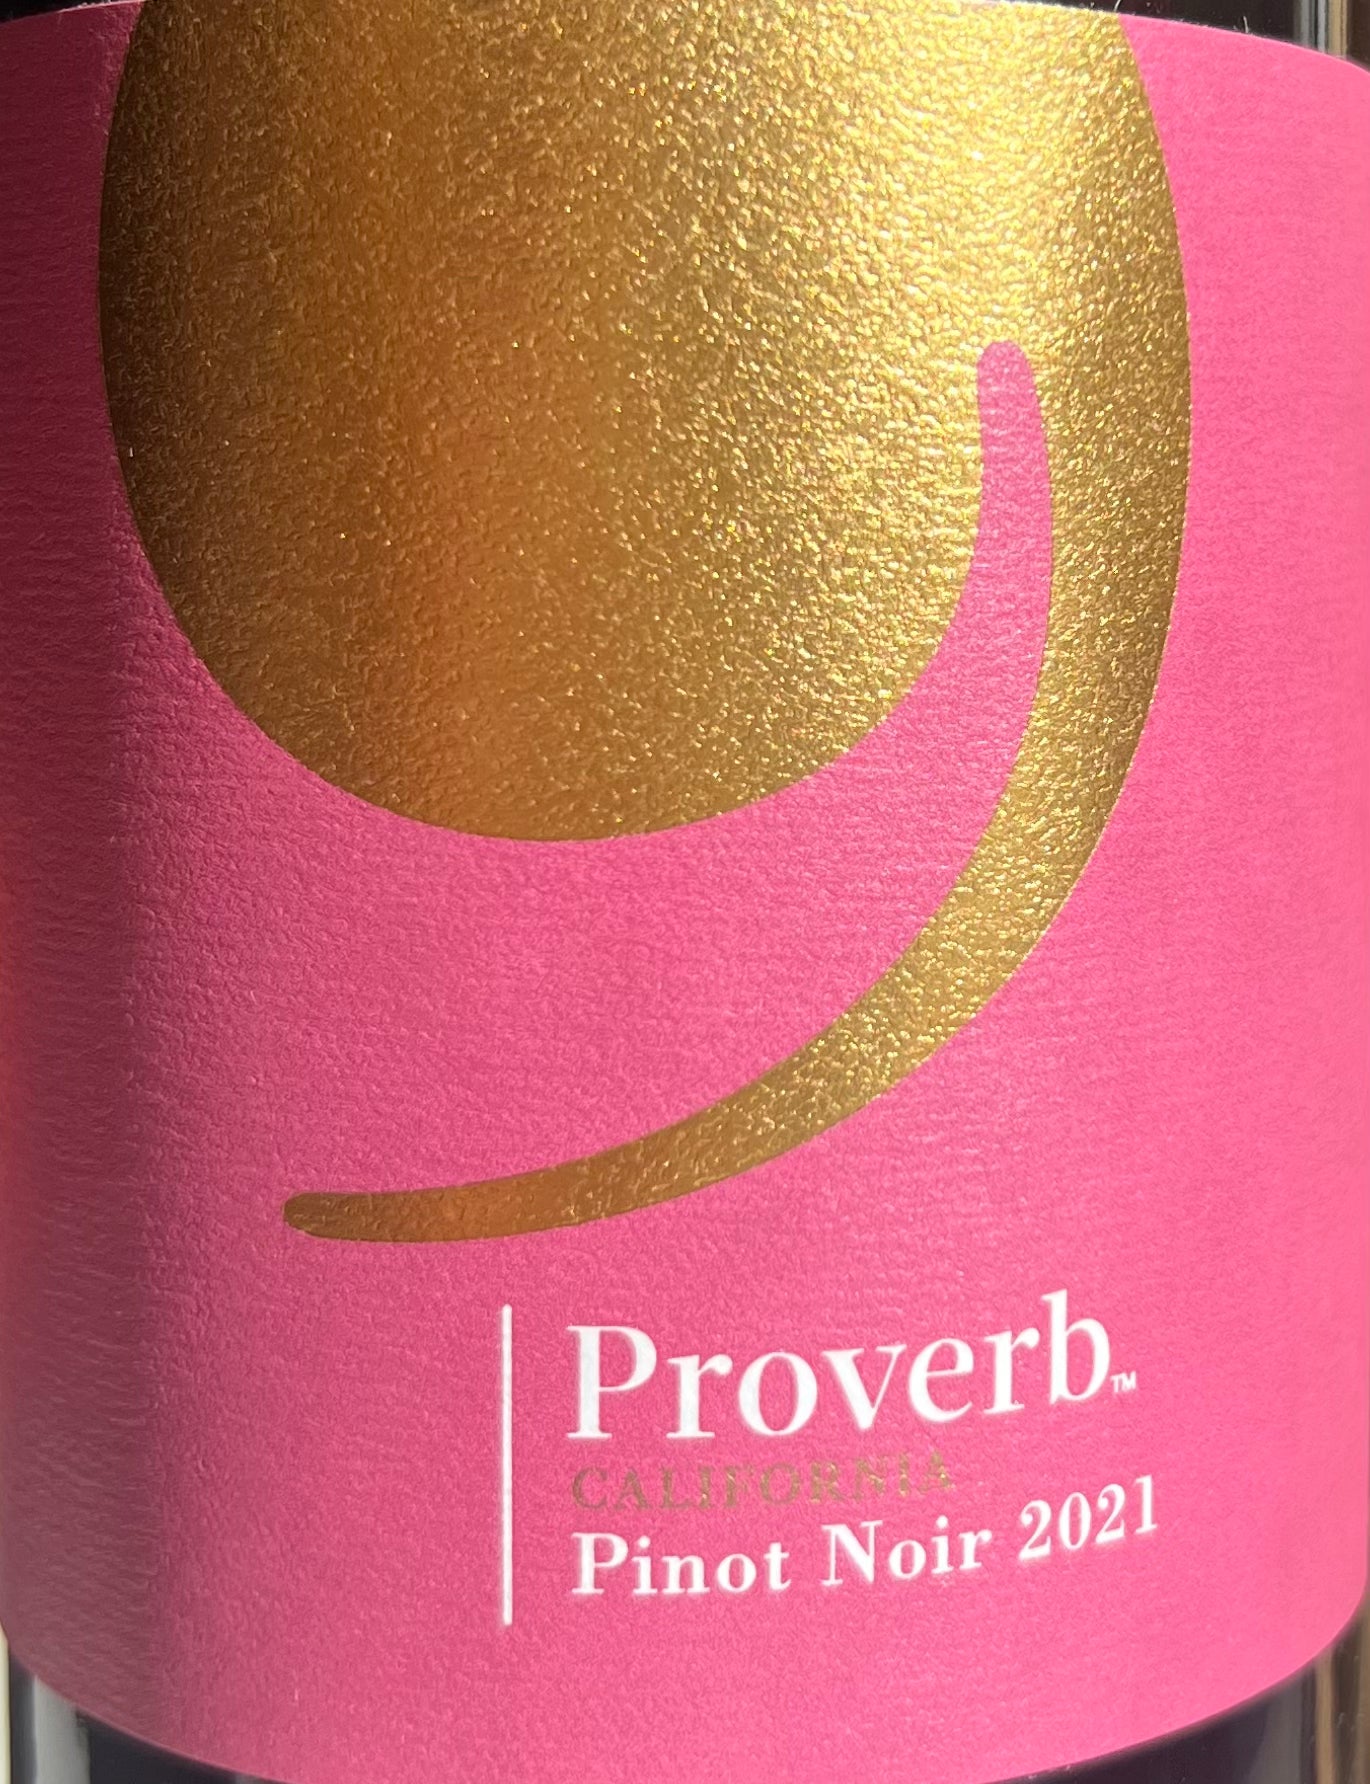 Proverb - Pinot Noir